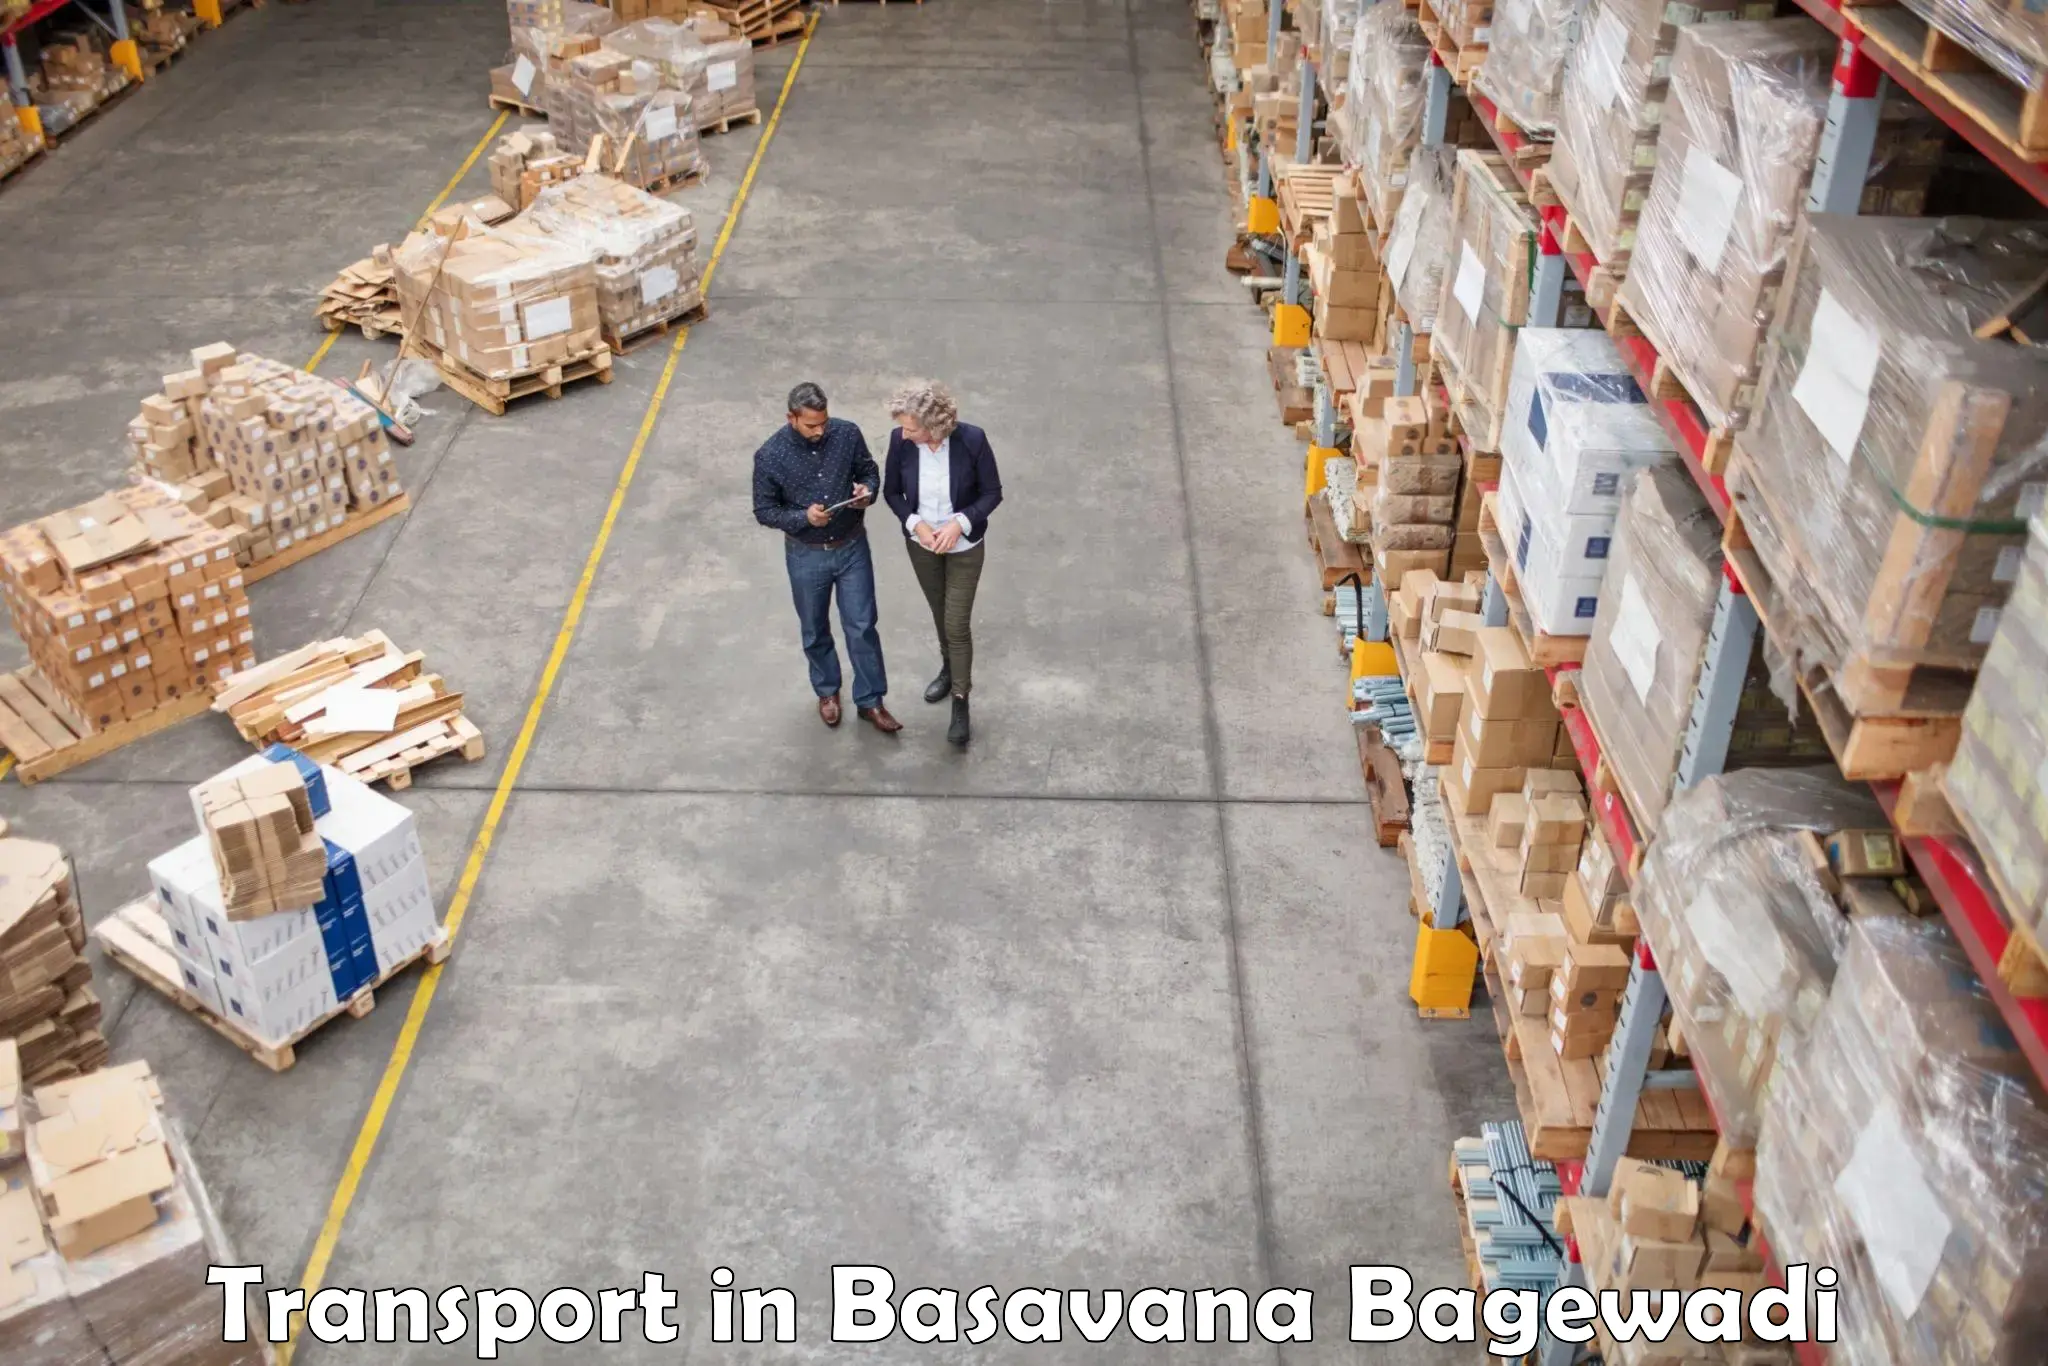 Transport in sharing in Basavana Bagewadi